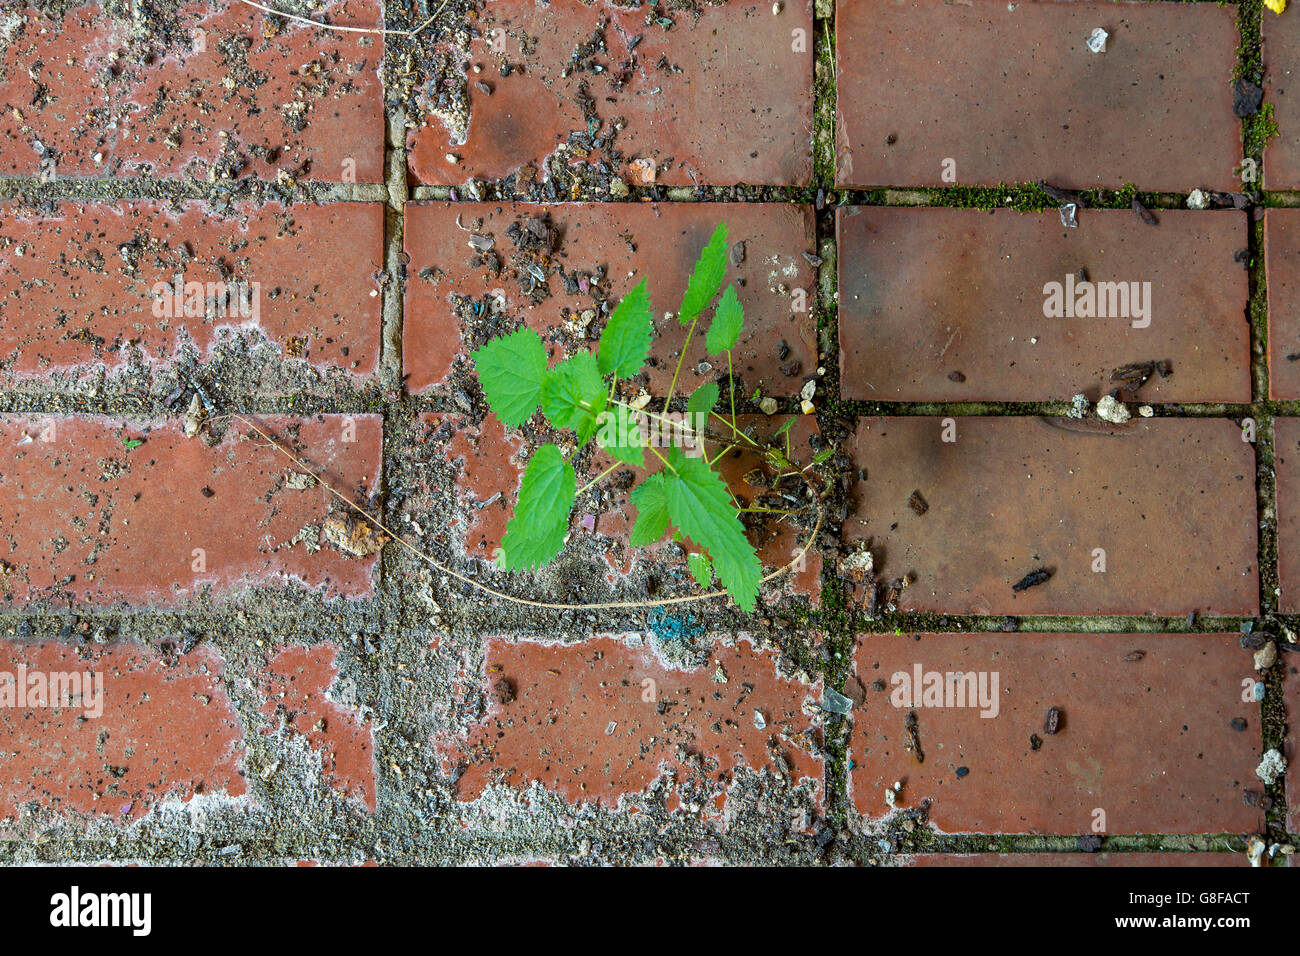 Las plantas que crecen en una zona industrial, extraño, hostil en el medio ambiente, a través de una fuga de las baldosas del suelo, Foto de stock